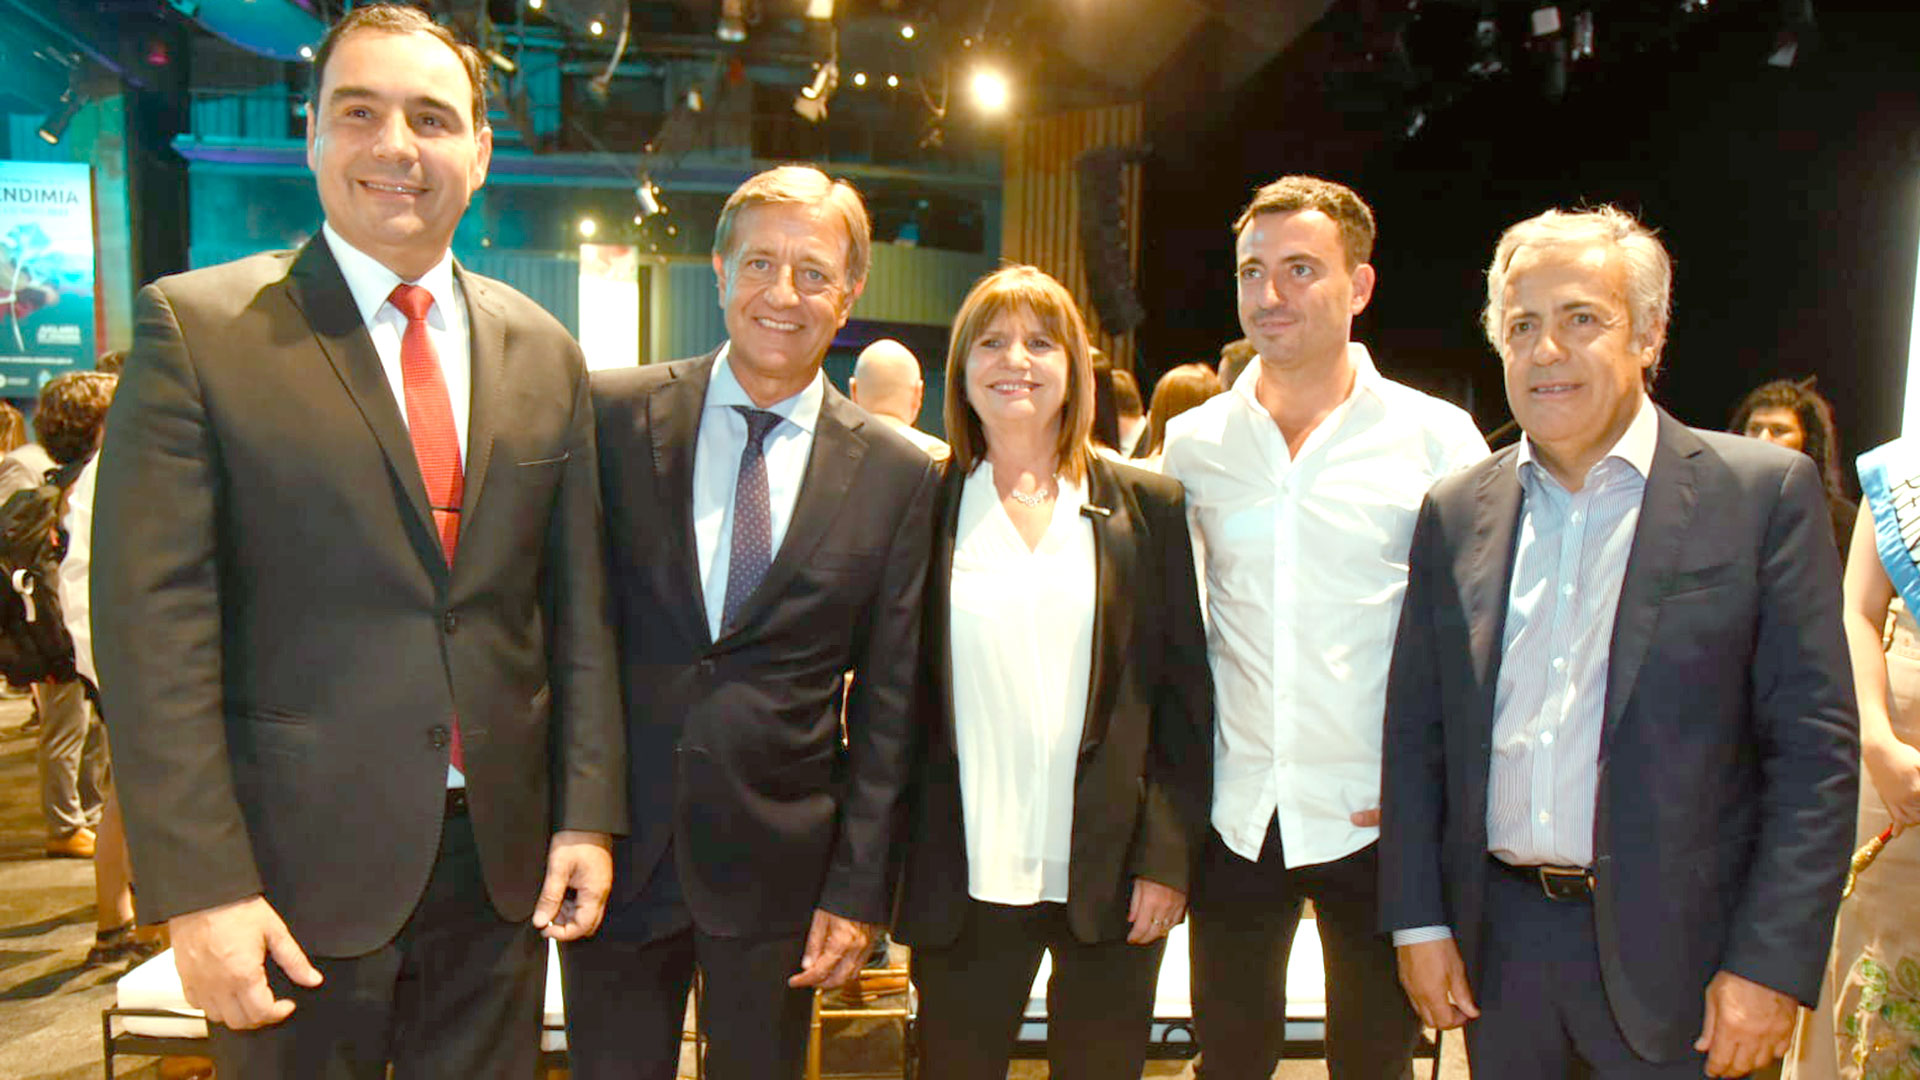 Patricia Bullrich posa en Mendoza con los radicales Rodolfo Suárez, Gustavo Valdés, Alfredo Cornejo y Rodrigo de Loredo
